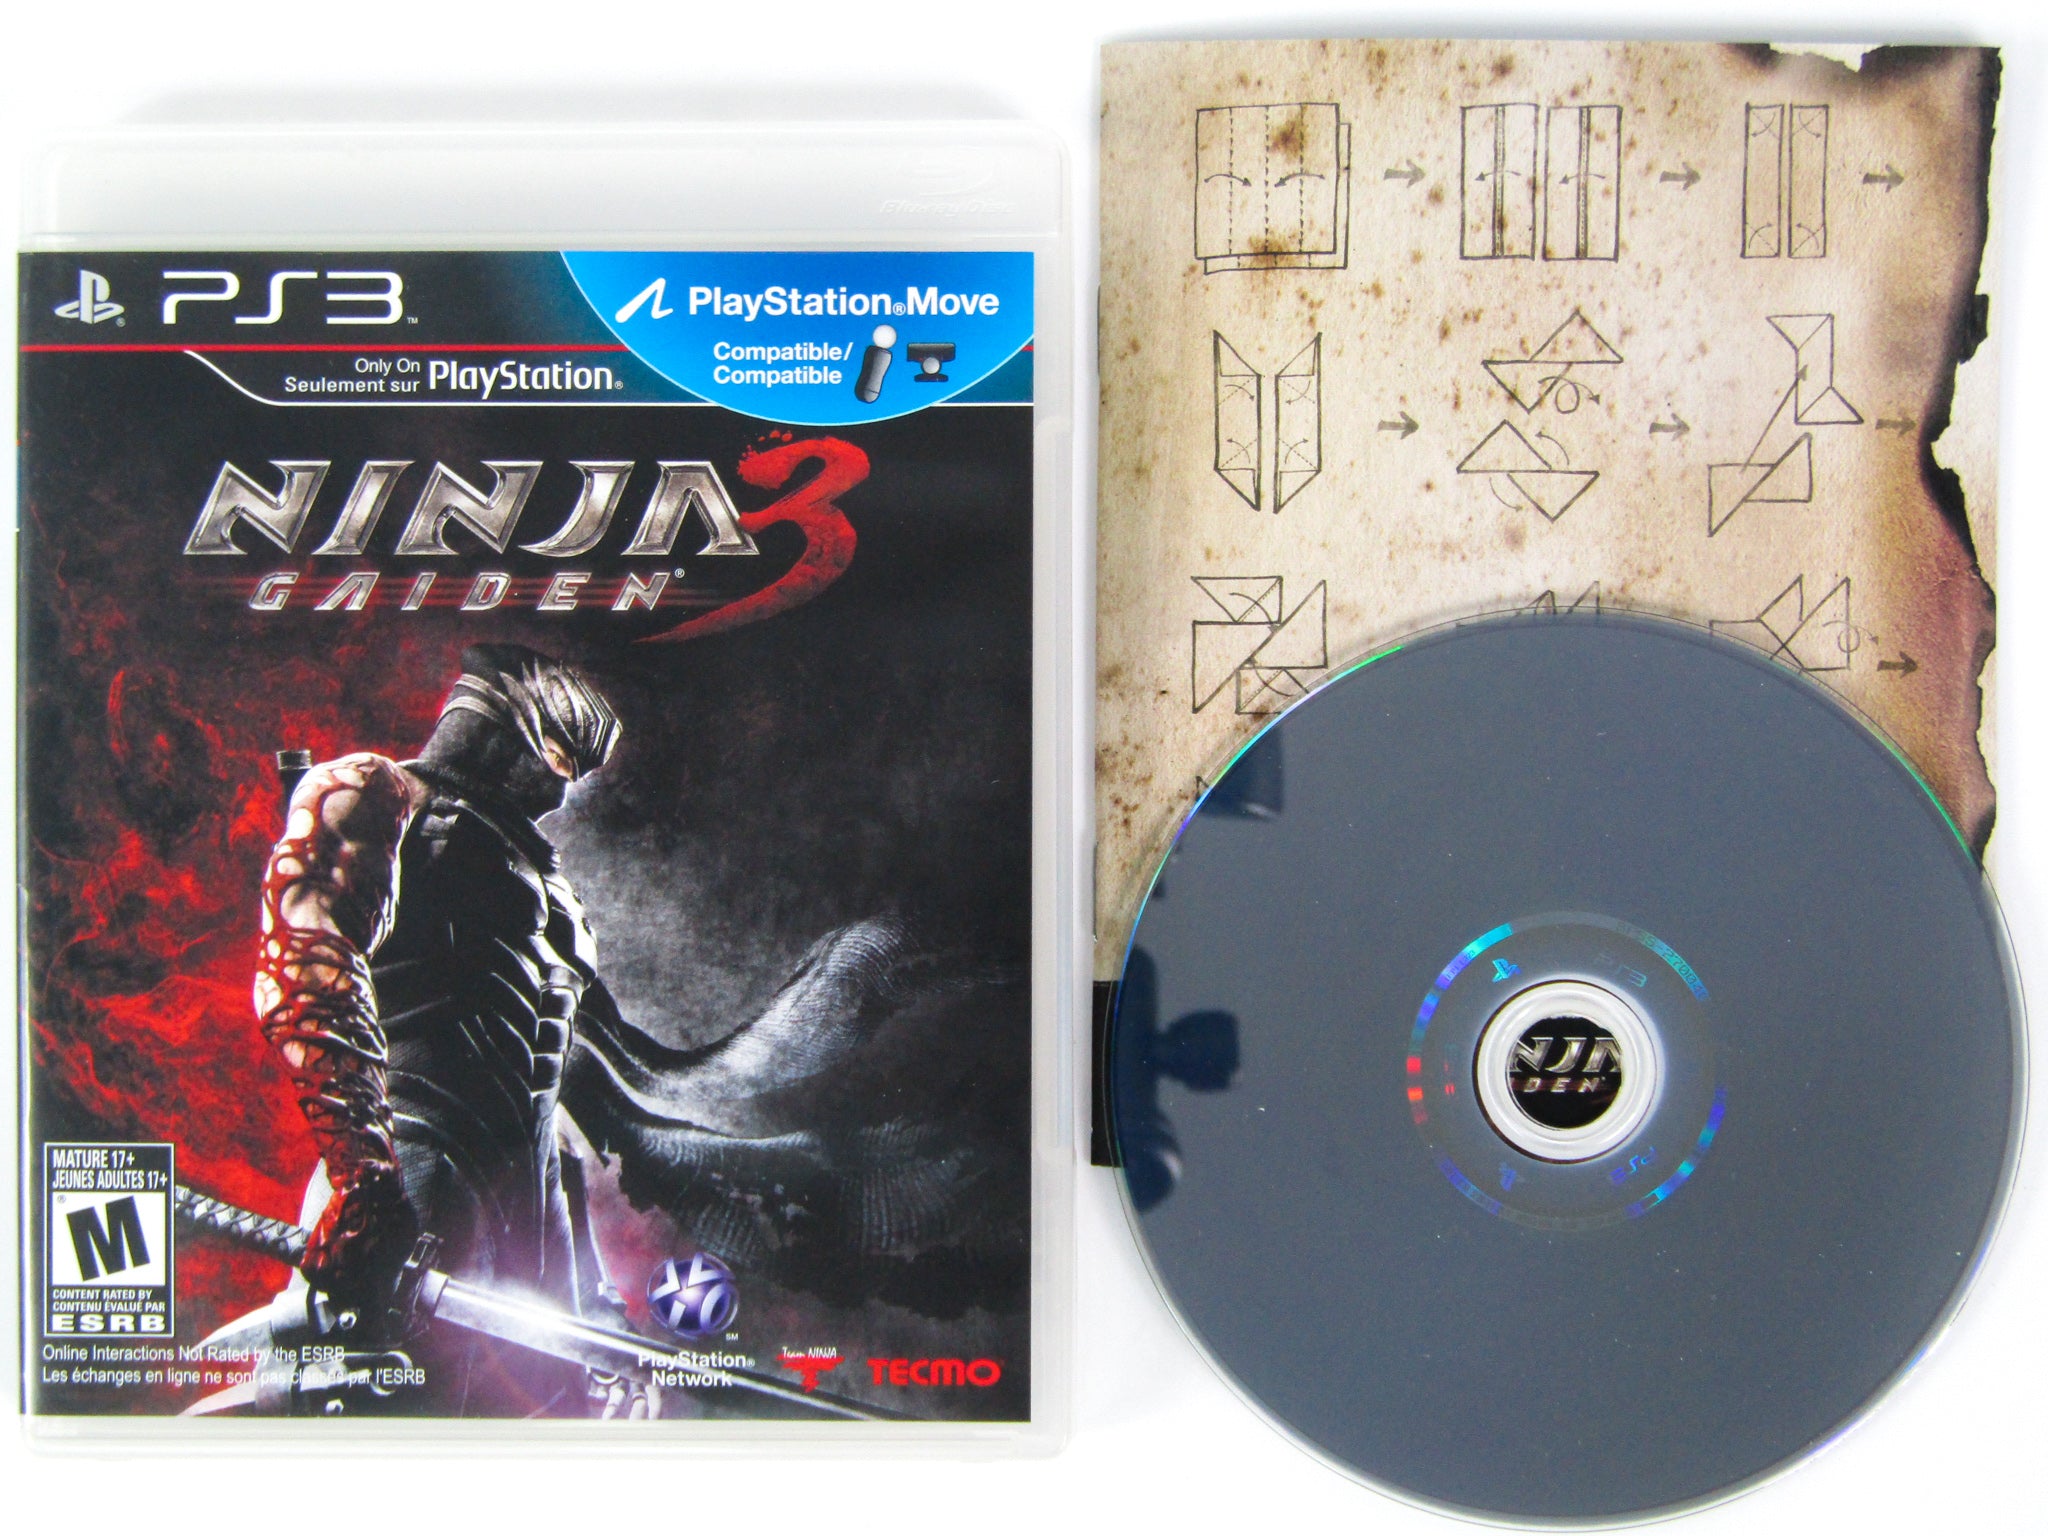 Ninja Gaiden (Playstation PS3) – RetroMTL